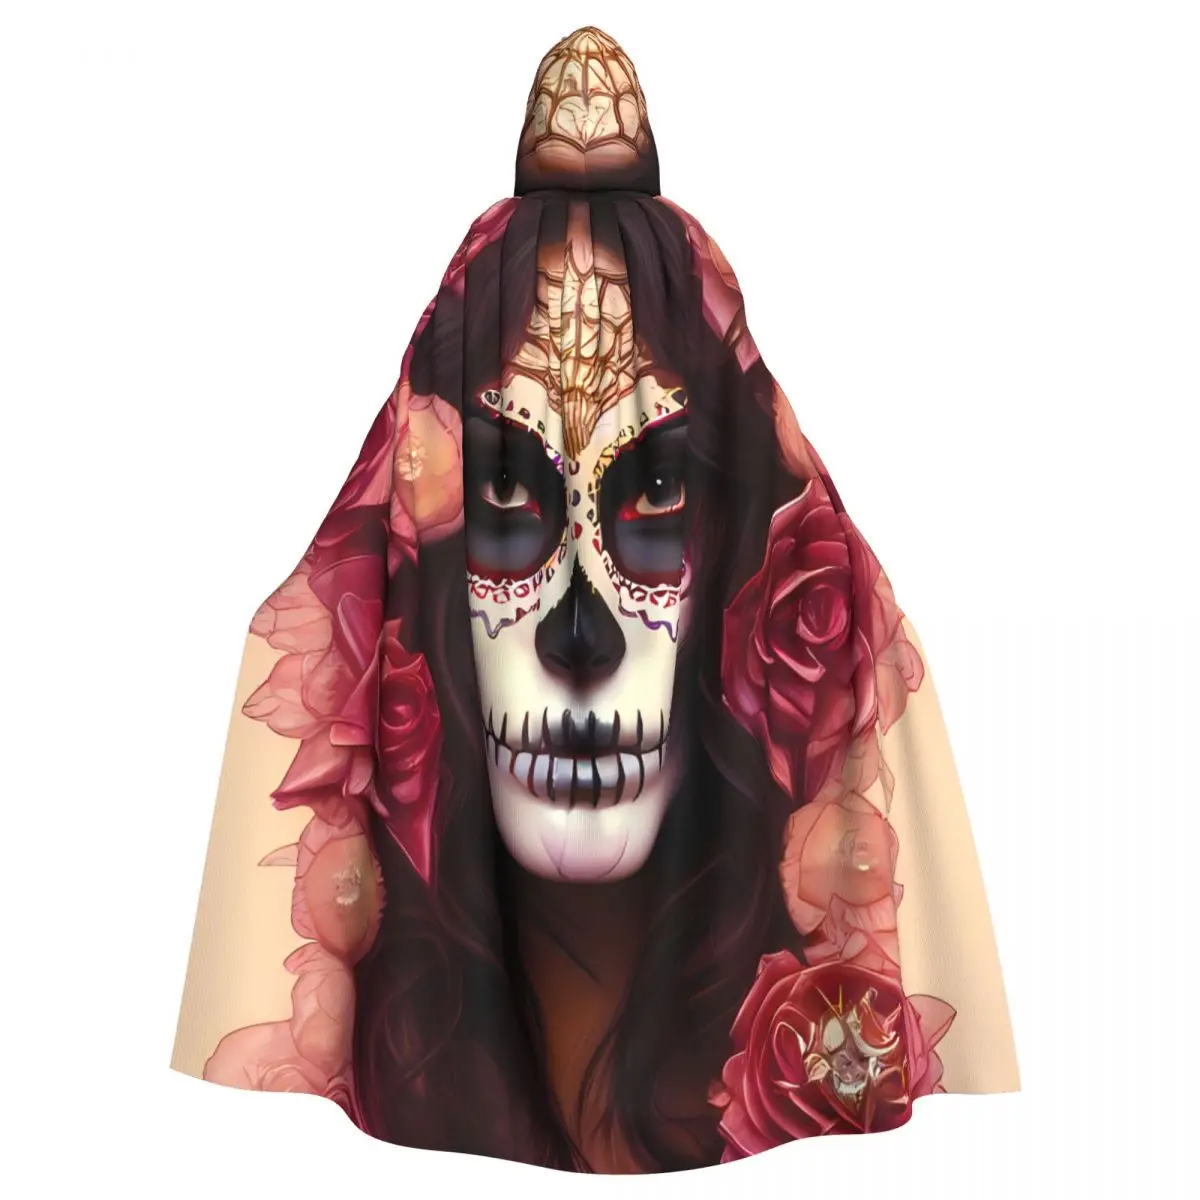 

Мексиканский череп, искусственная накидка, средневековый костюм с капюшоном, ведьма, Wicca, эльф вампира, Пурим, карнавал, фотосессия